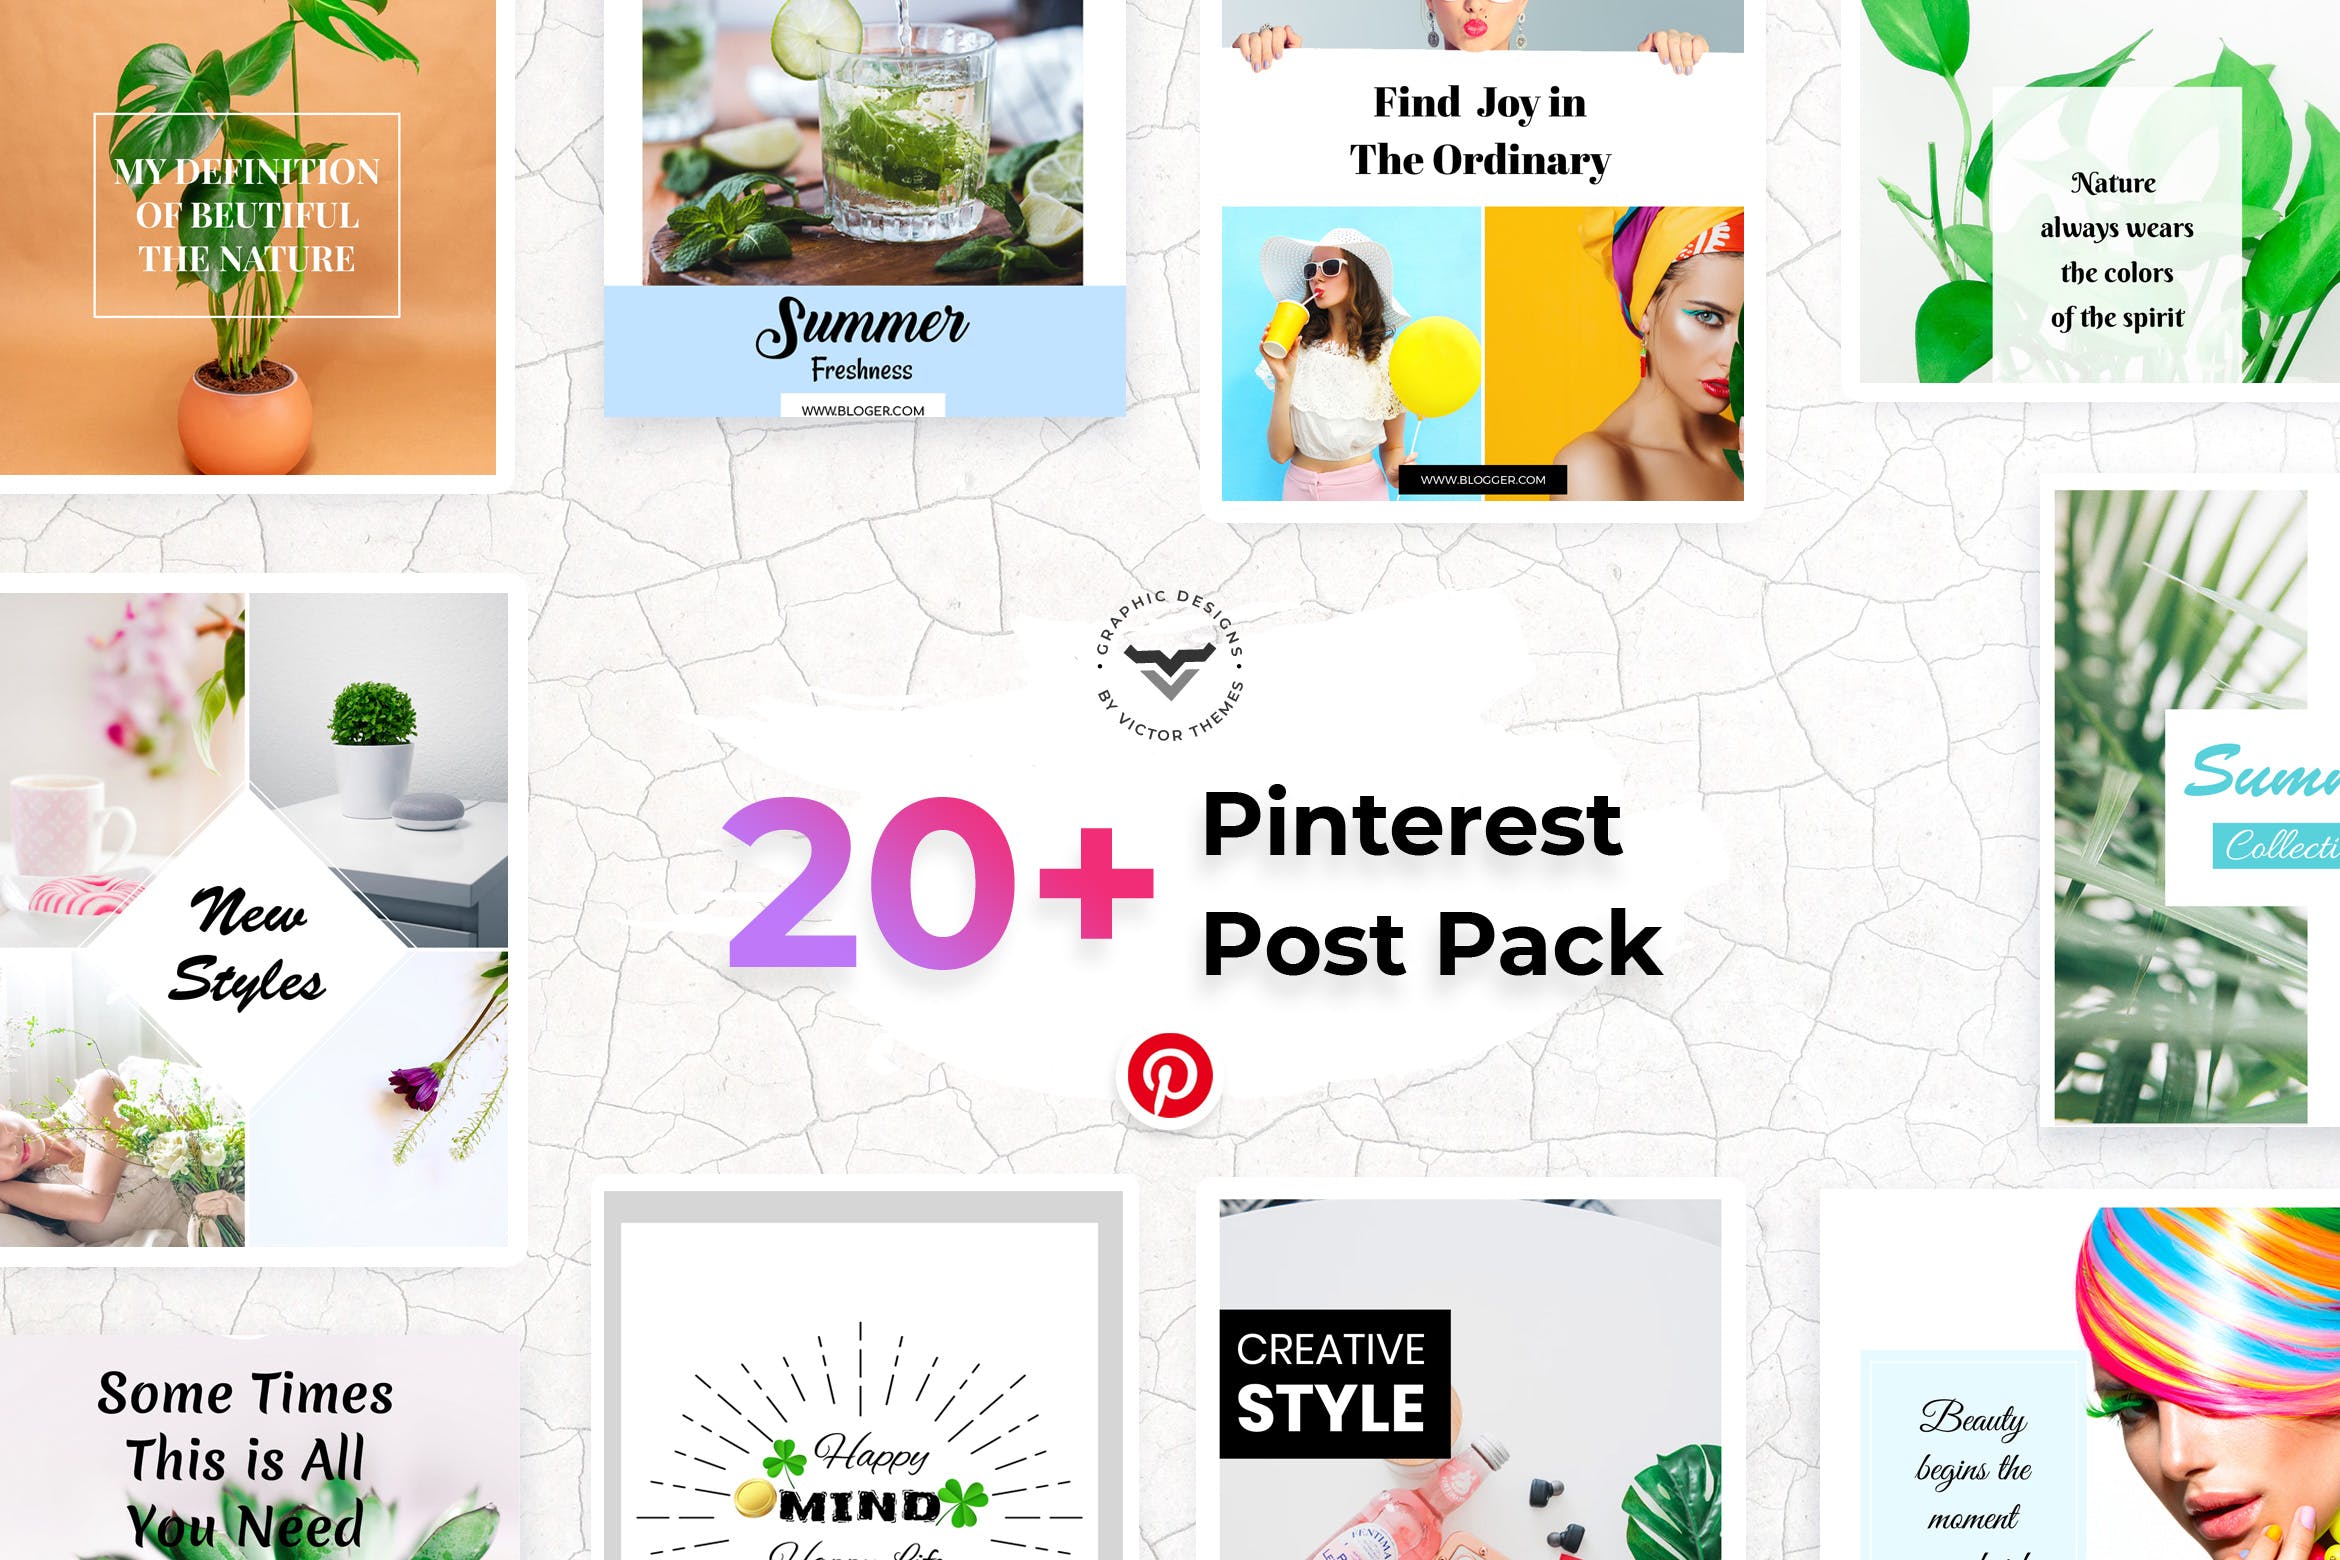 20+Pinterest社交网站文章配图设计模板第一素材精选 Pinterest Social Media Templates插图